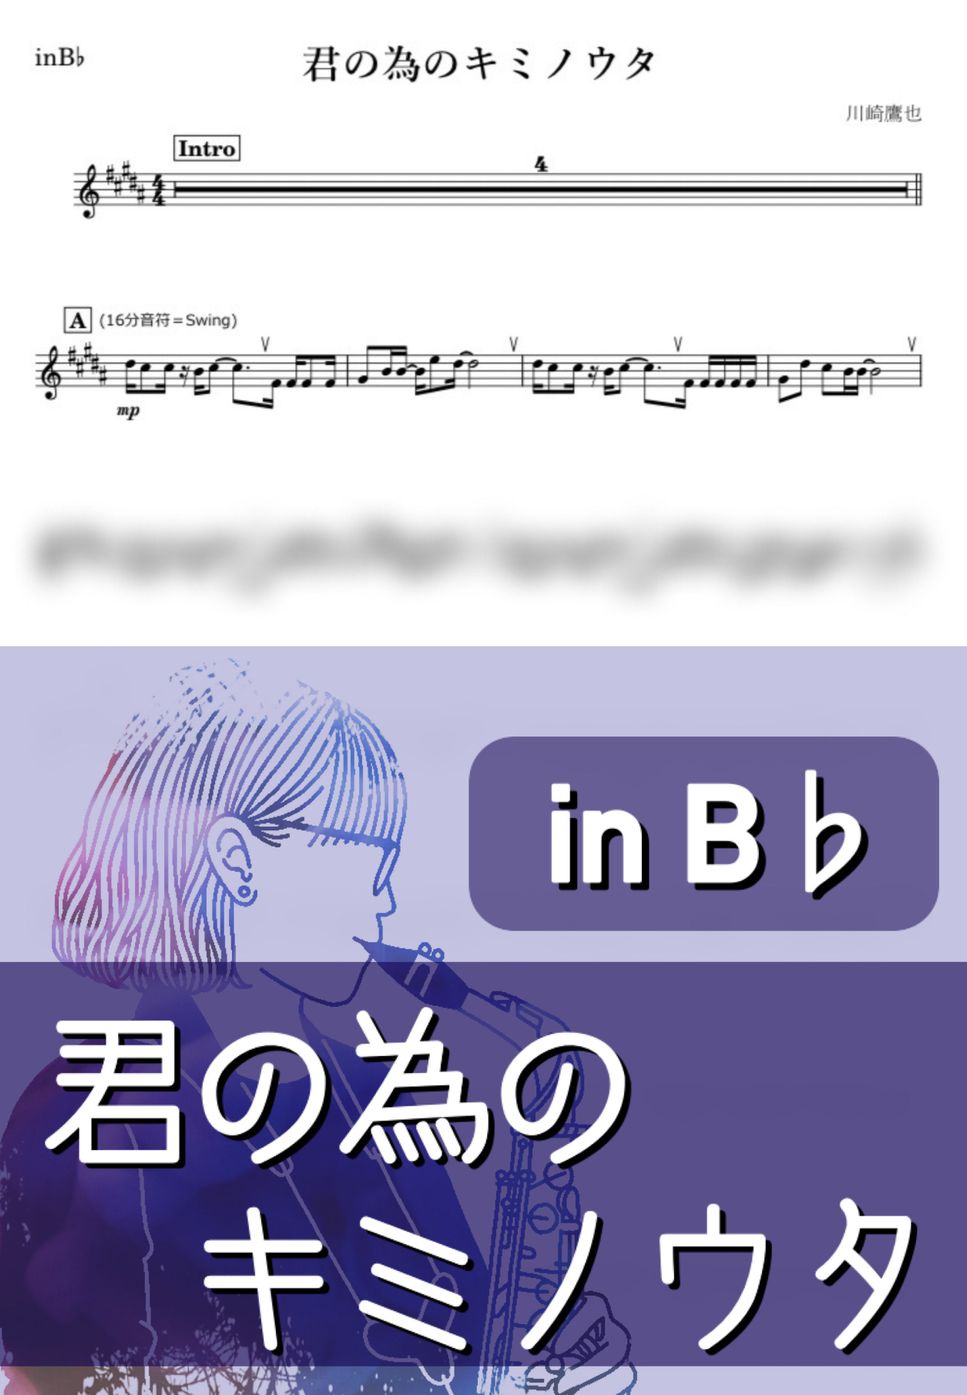 川崎鷹也 - 君の為のキミノウタ (B♭) by kanamusic